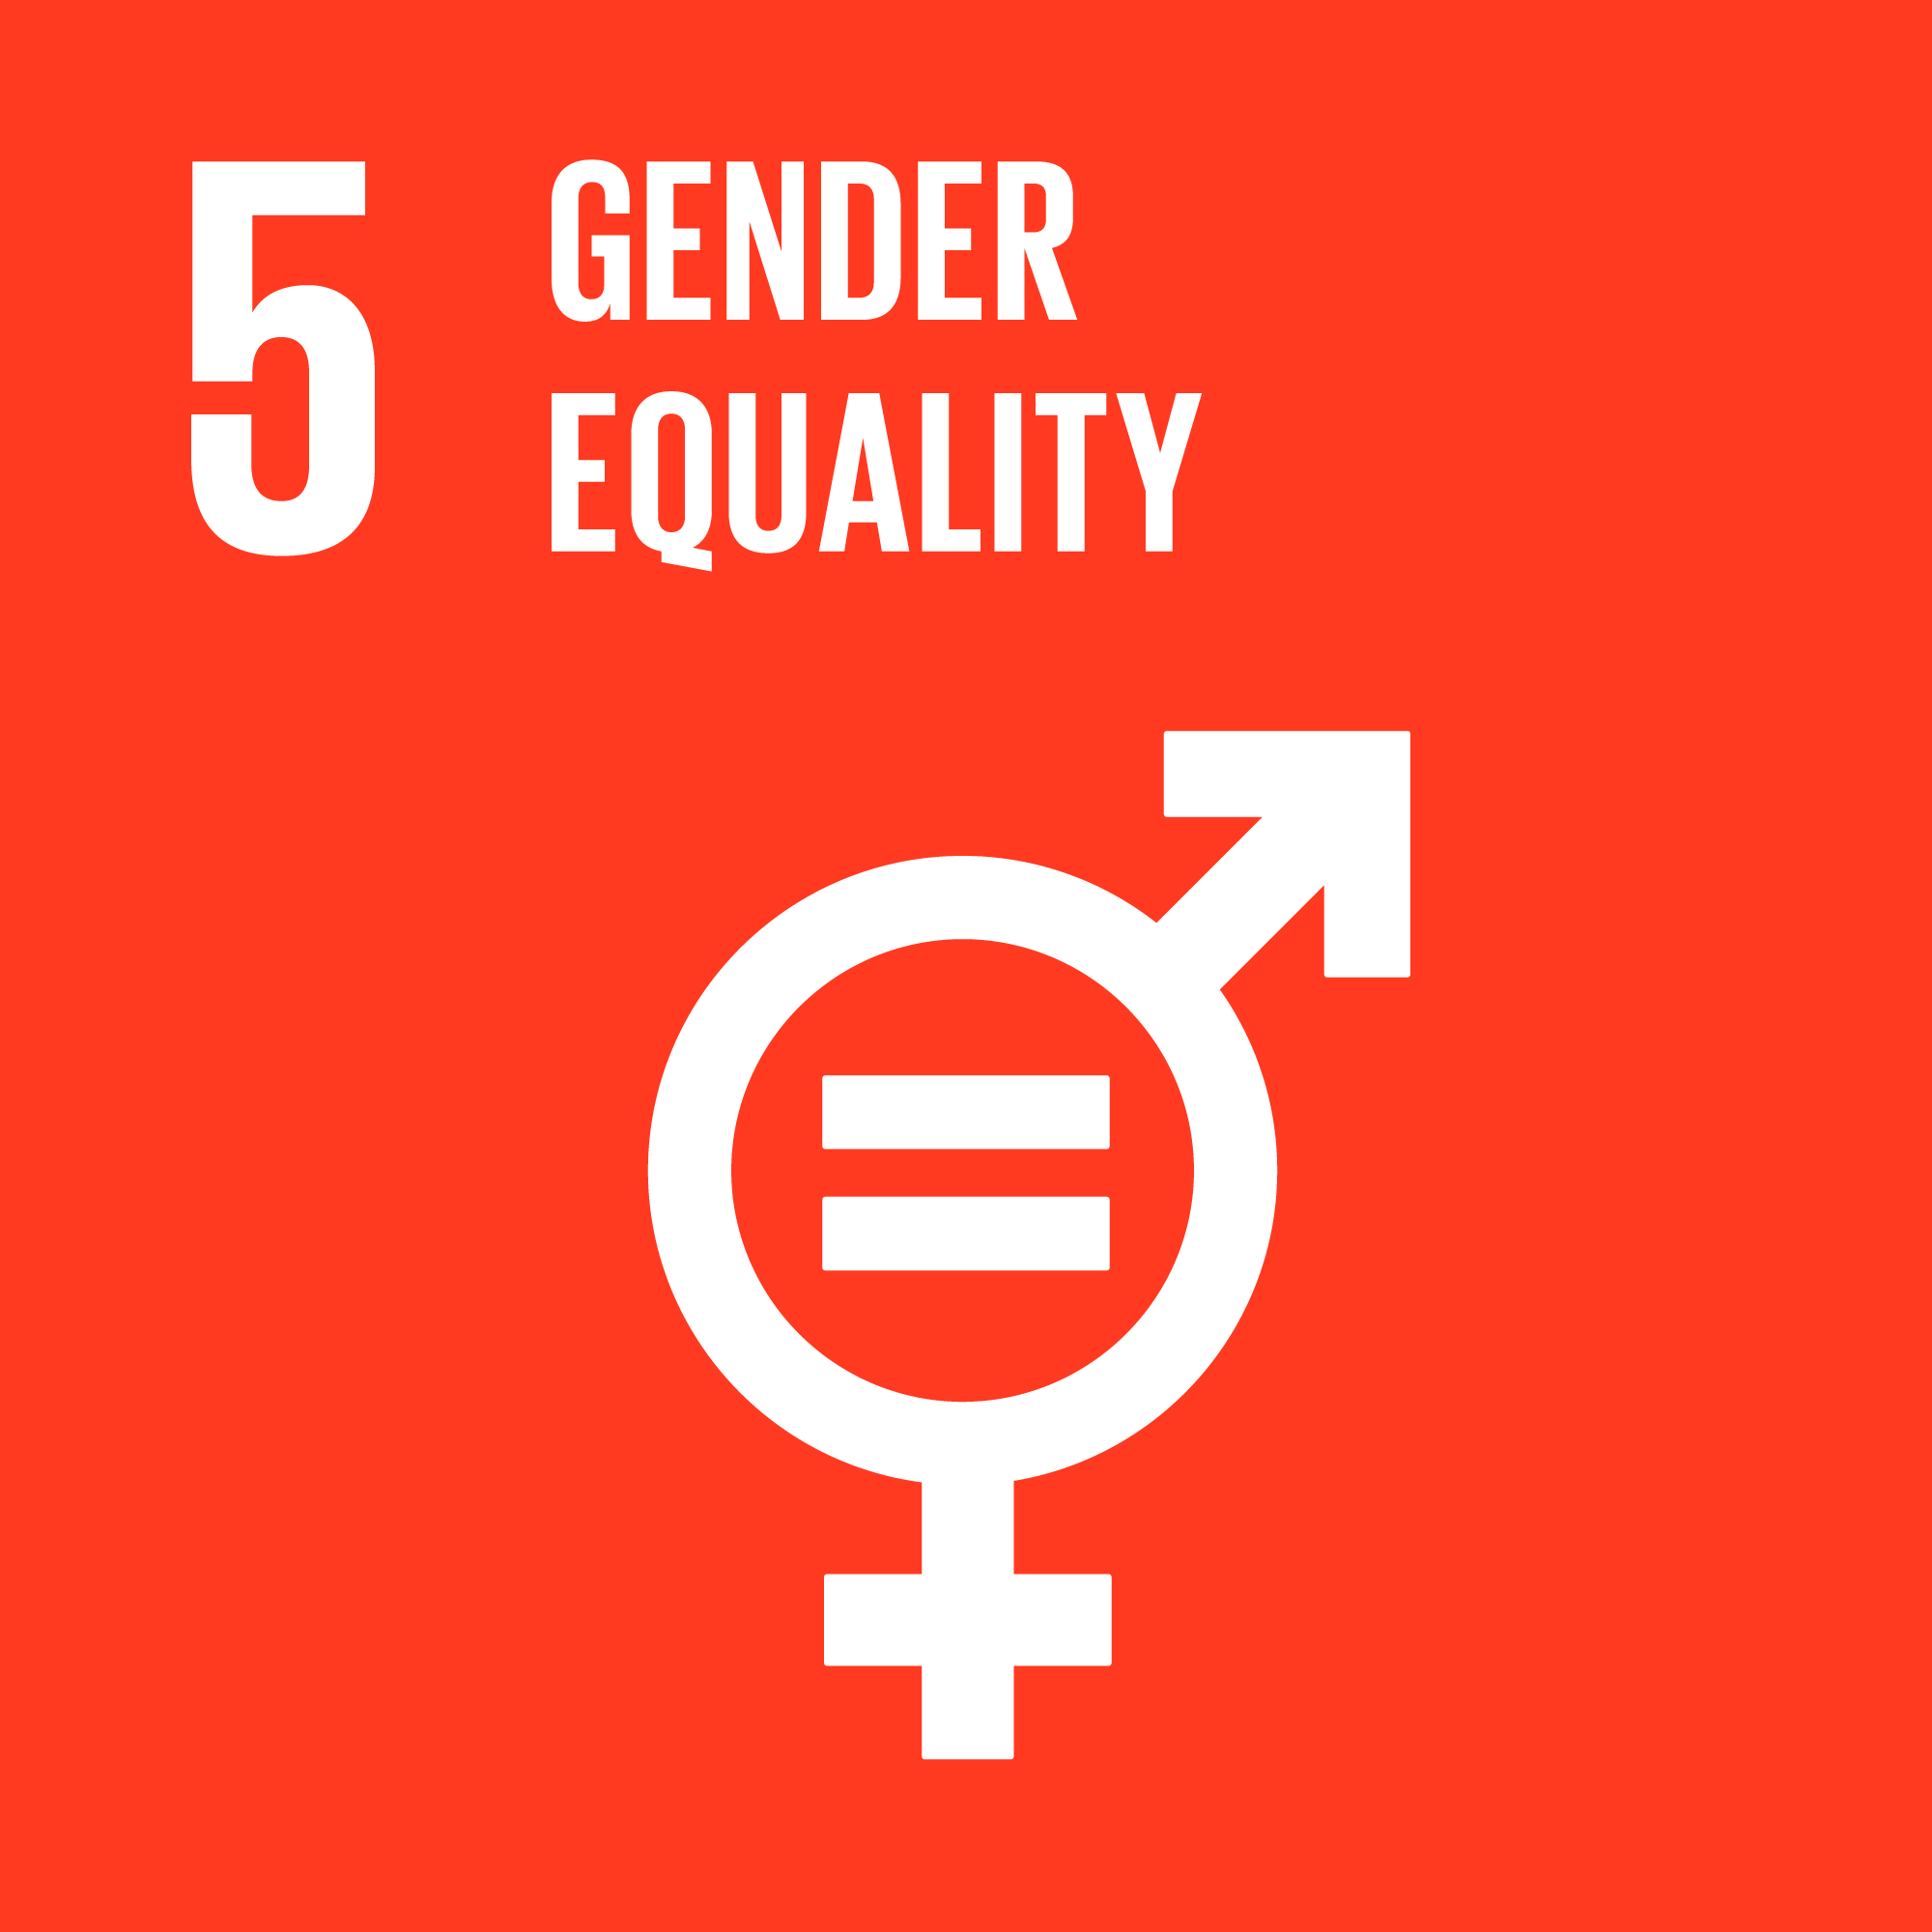 Global Goal 5: Gender Equality